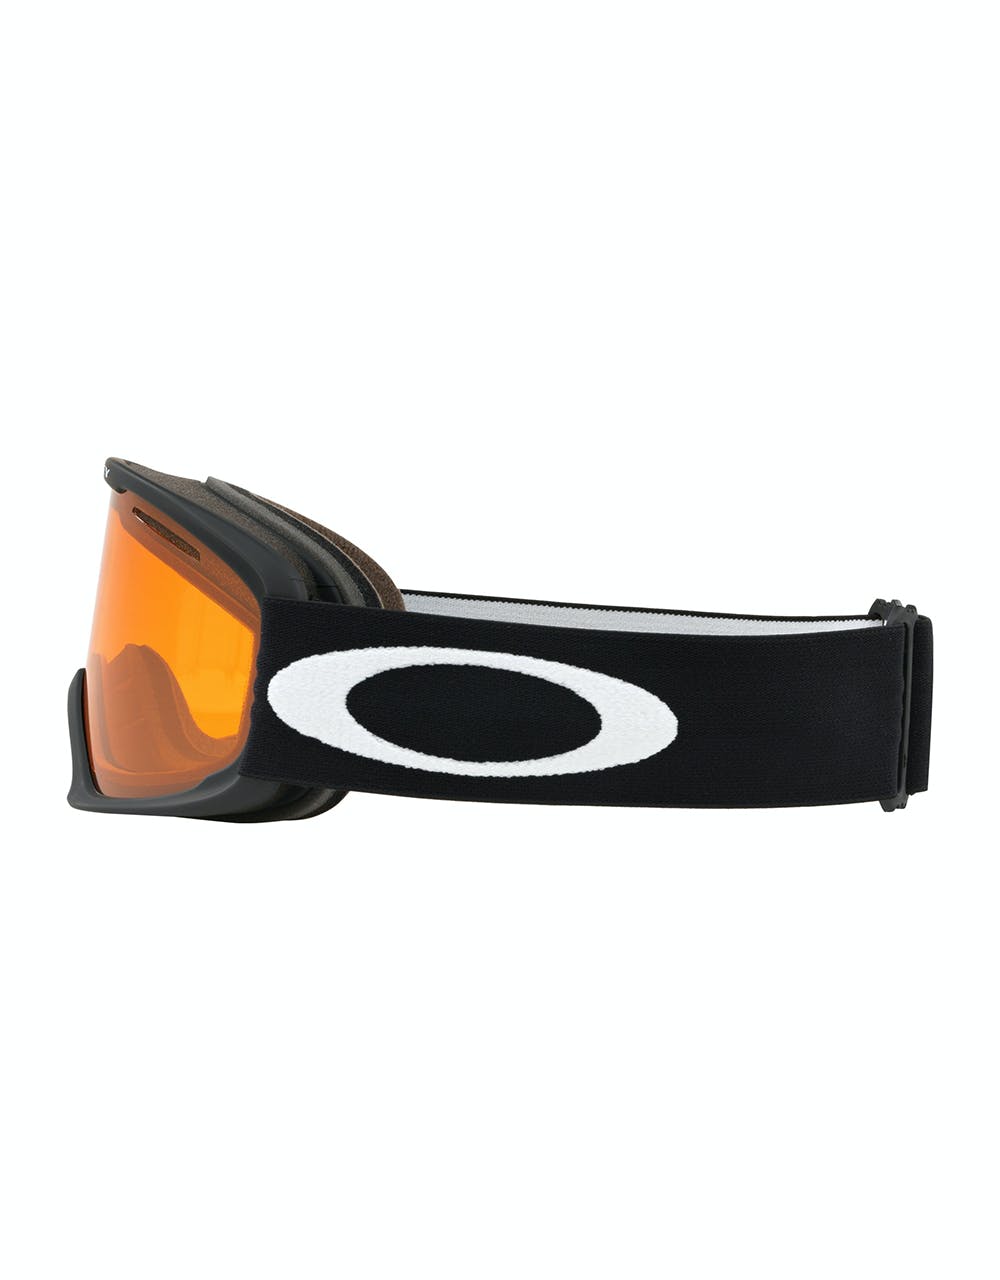 Oakley O Frame 2.0 Pro XL Snowboard Goggles - Black/Persimmon